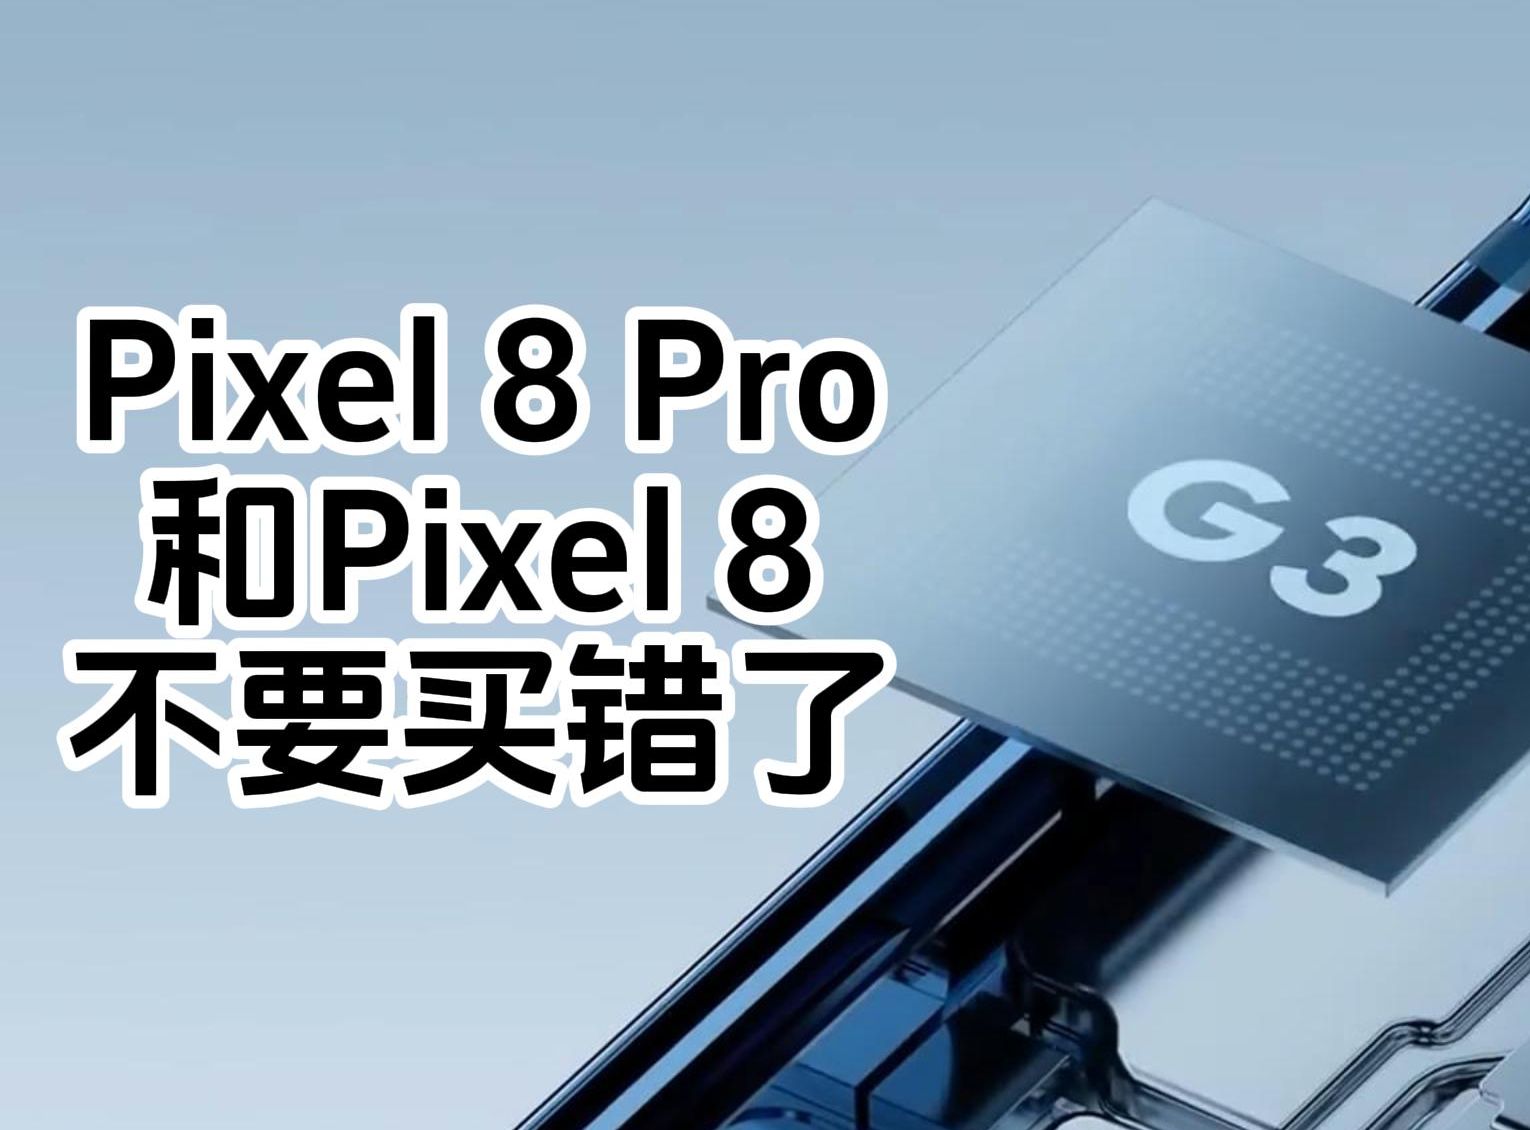 Pixel 8 Pro和Pixel 8不要买错了